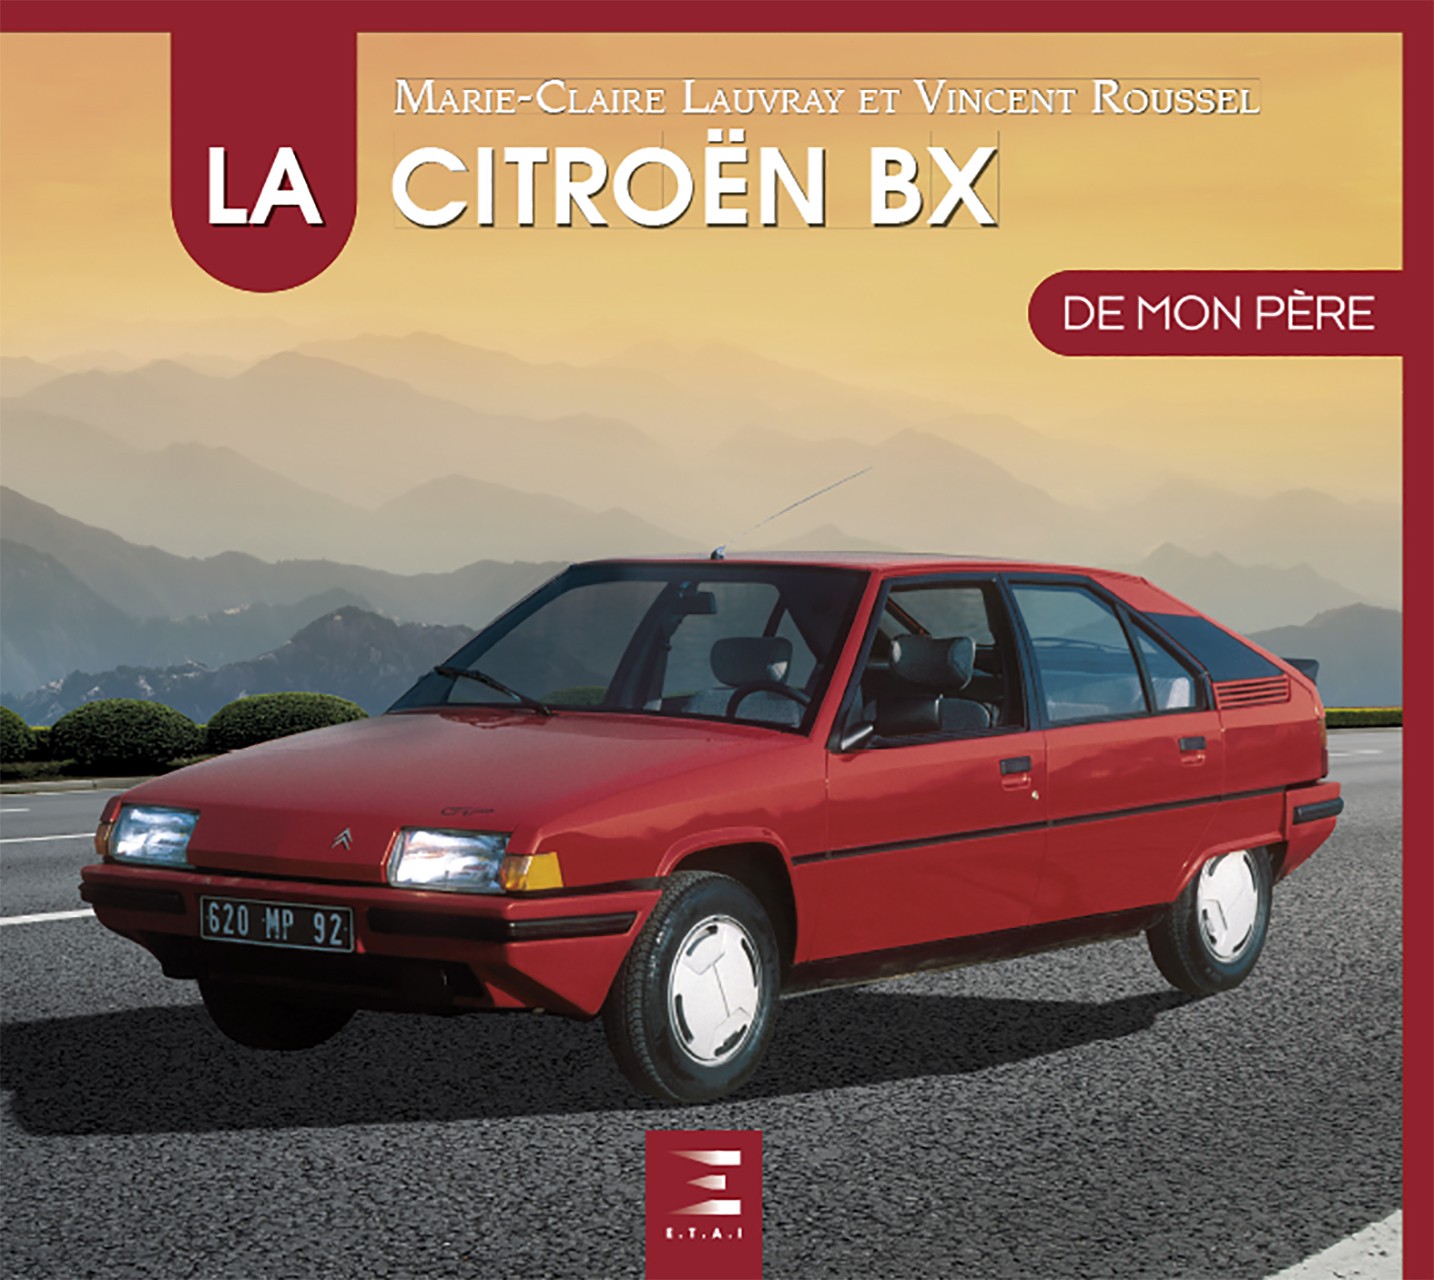 Citroën BX de mon père